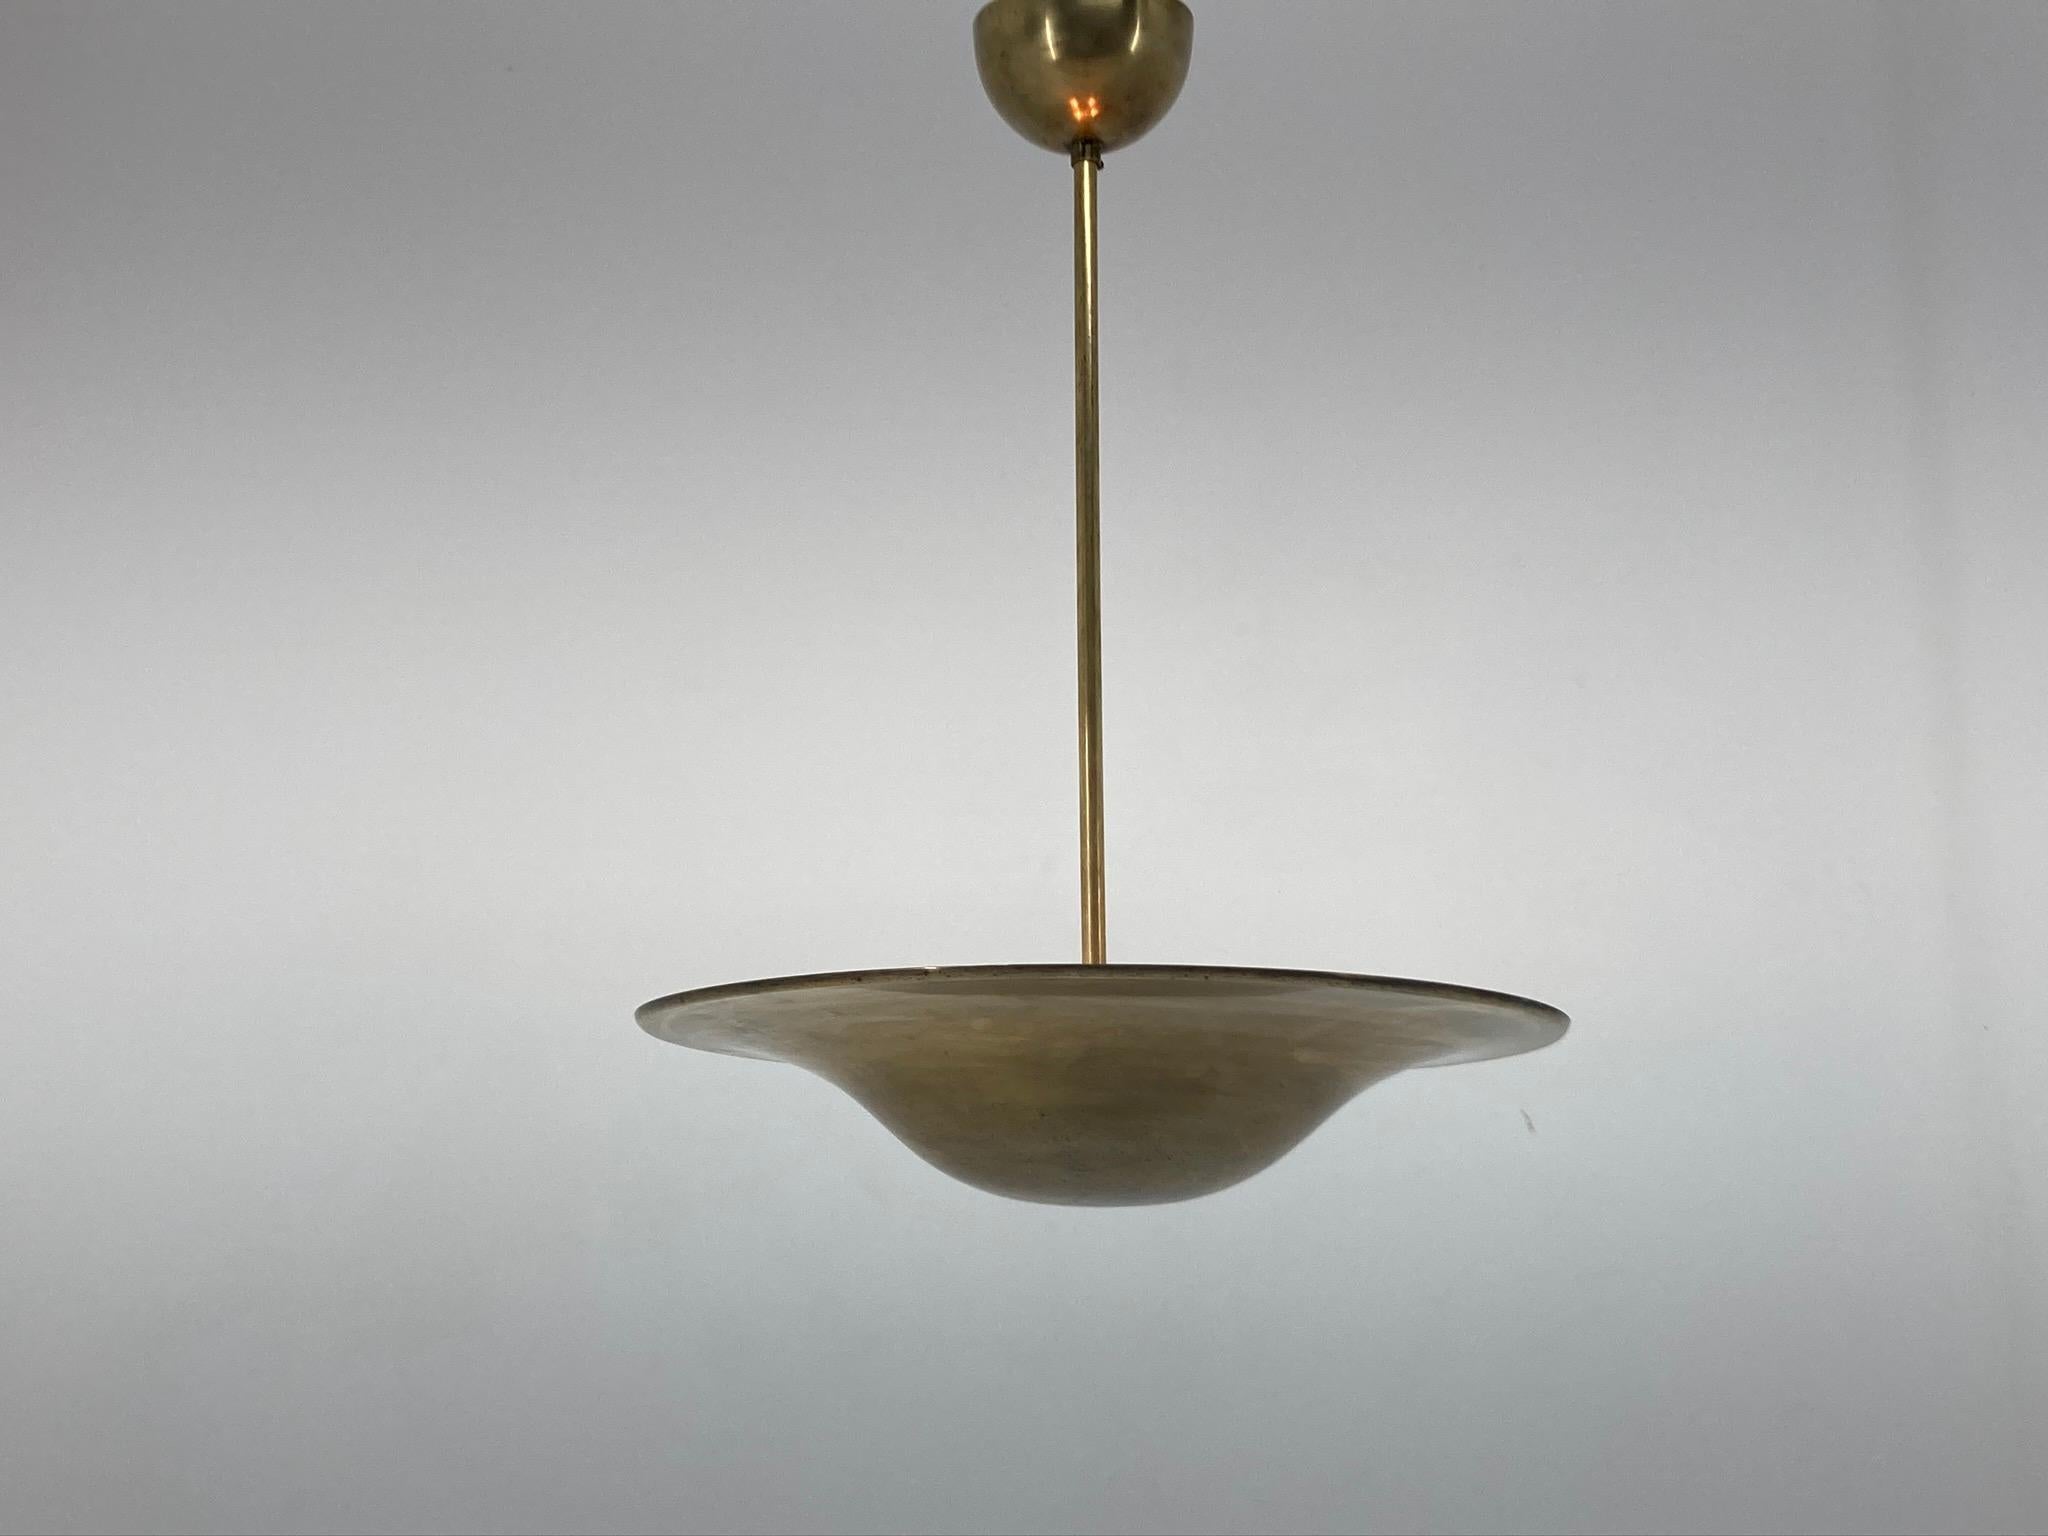 Czech Bauhaus / Functionalism Brass Pendant, 1930s